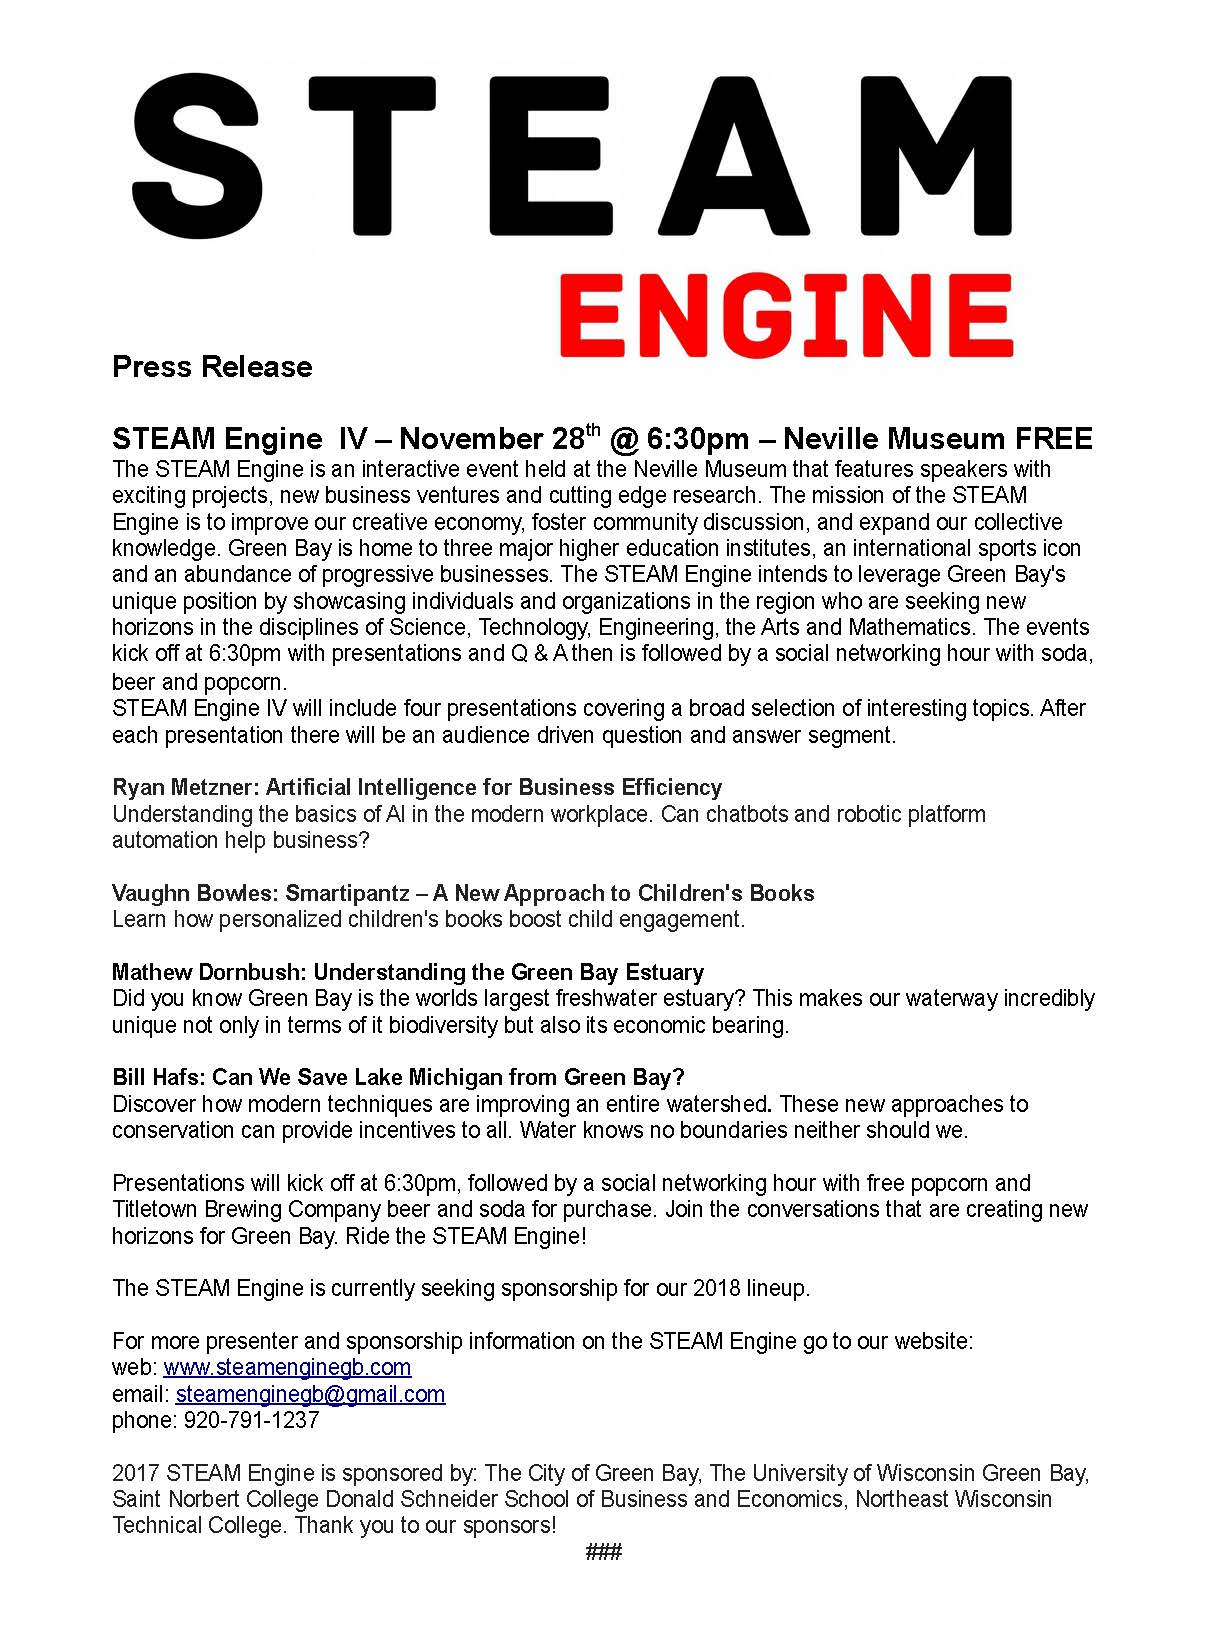 STEAM engine press release